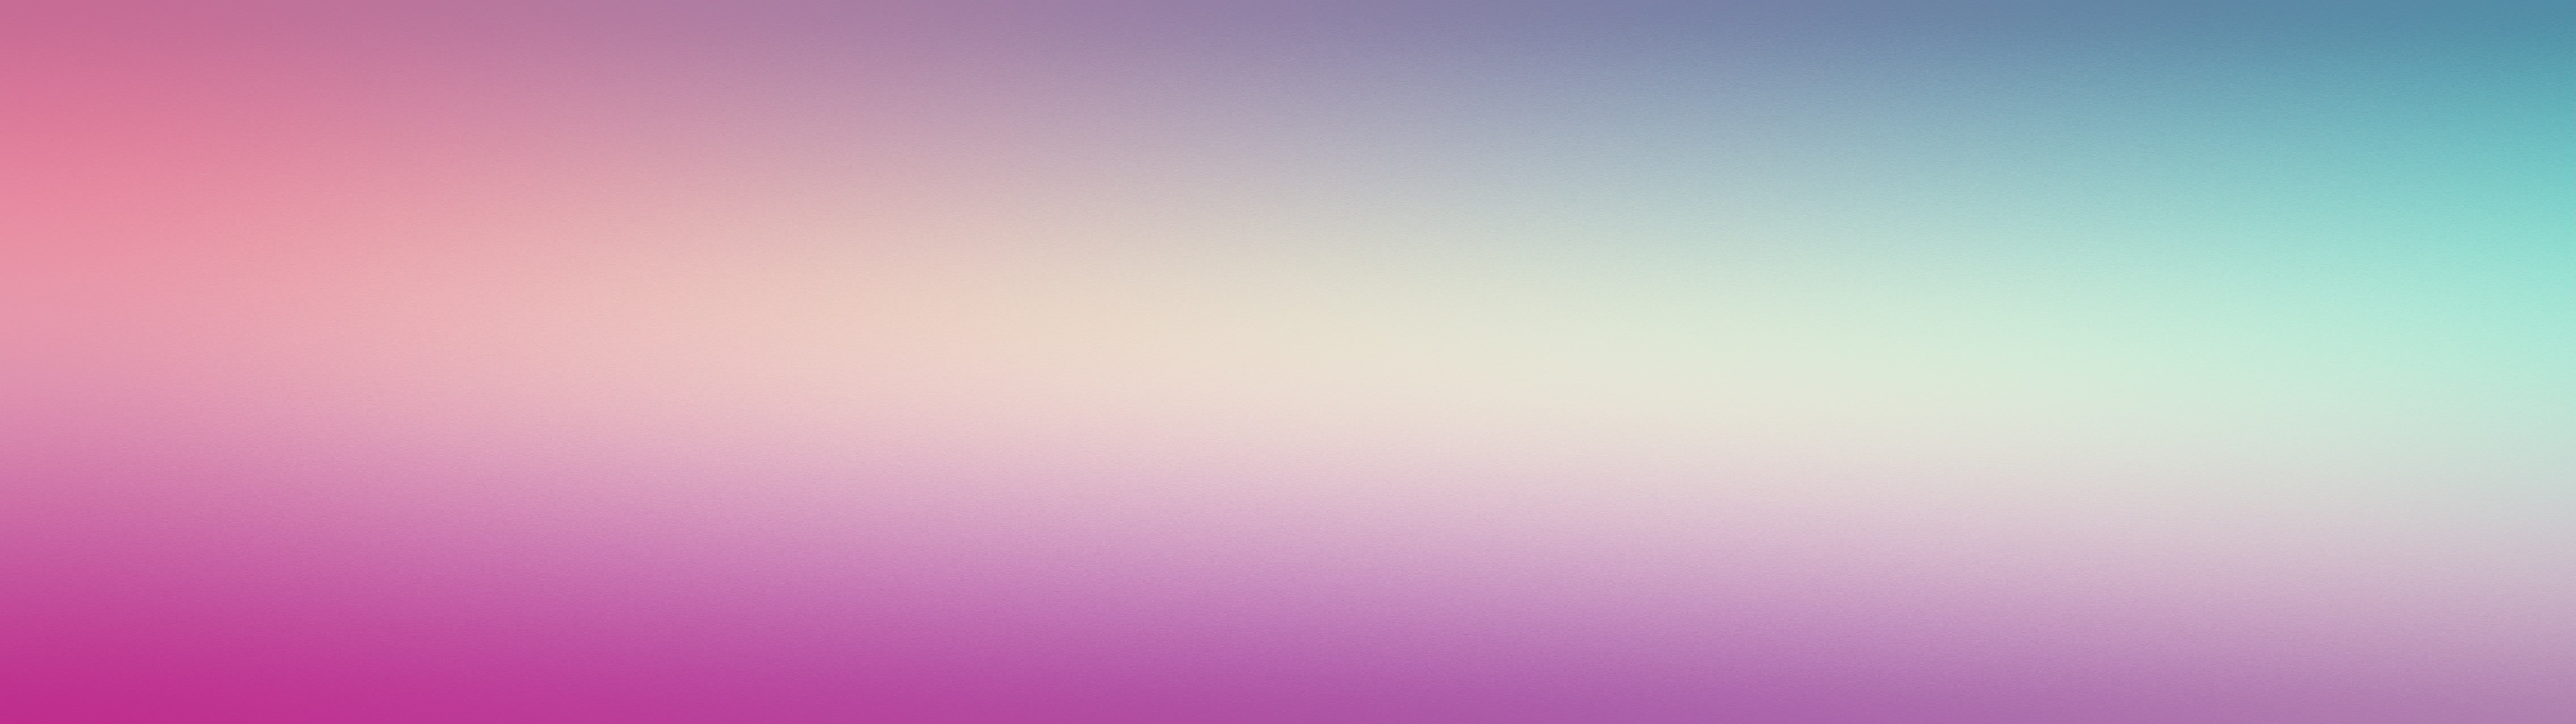 Với sự kết hợp tuyệt vời giữa những màu sắc gradient, hình nền này sẽ đem lại cho bạn một trải nghiệm thú vị và đầy thăng hoa khi sử dụng máy tính hay điện thoại của mình. Hãy cùng khám phá những điều thú vị về hình nền này bằng cách nhấn vào ảnh liên quan.